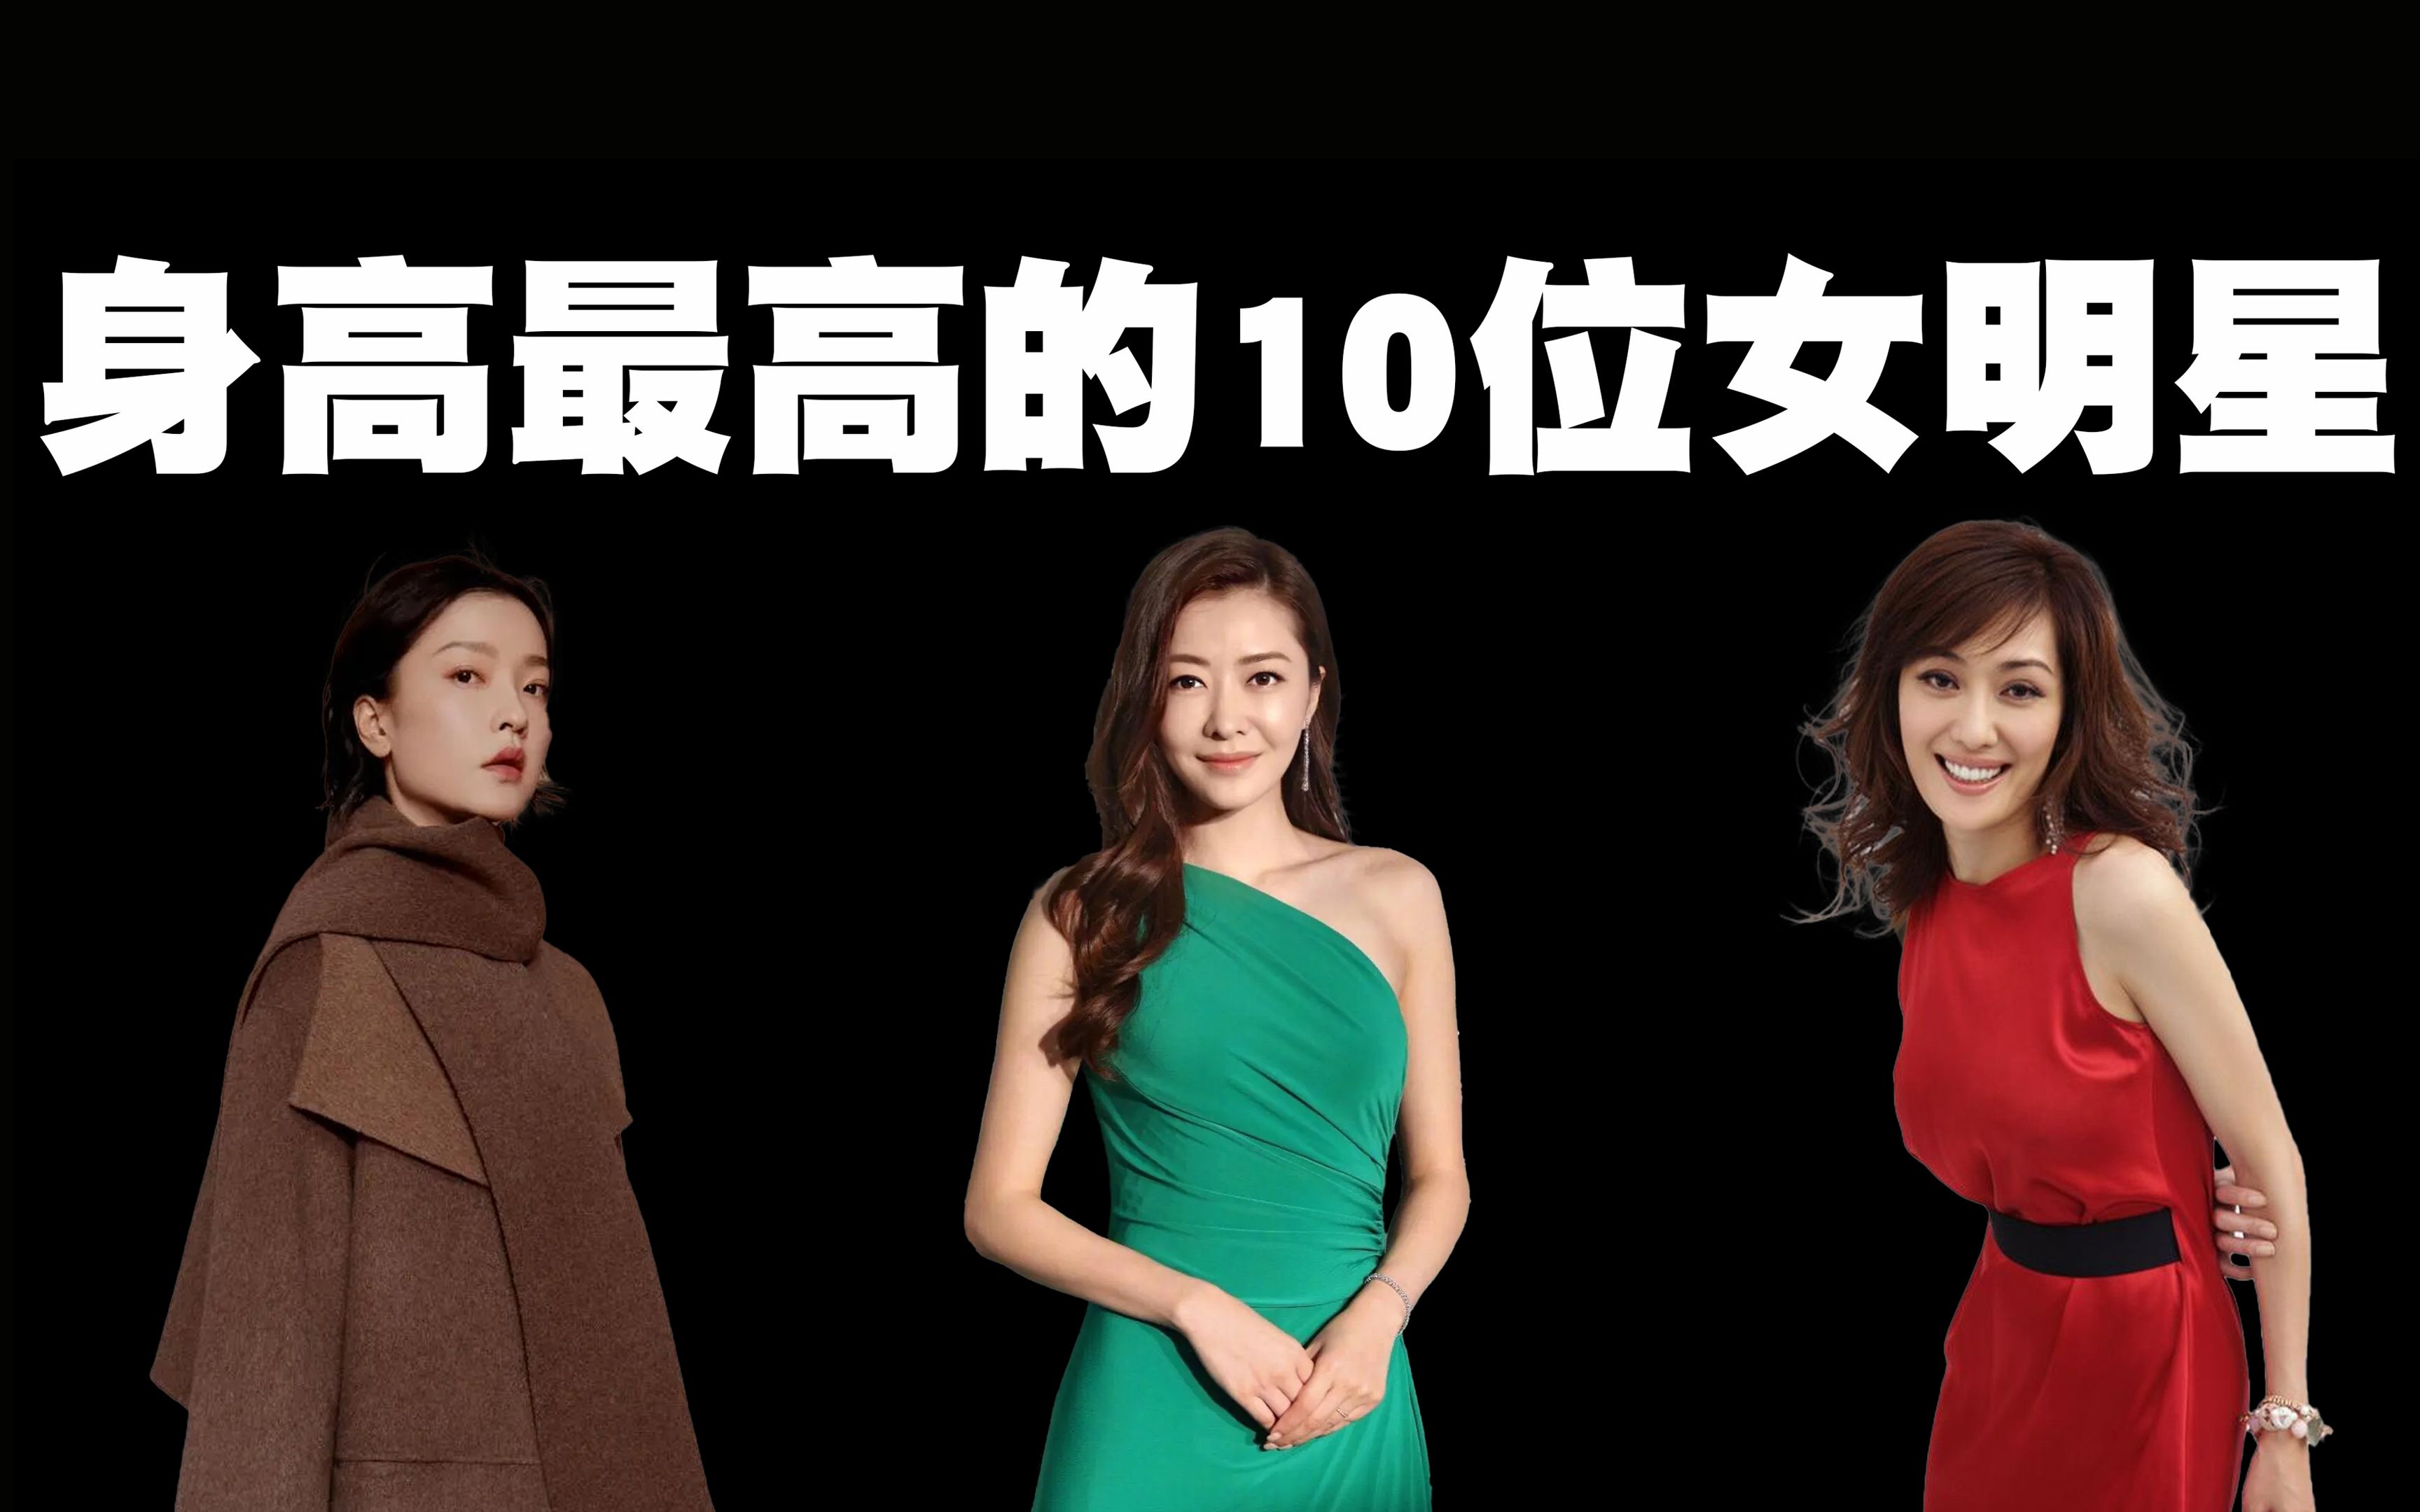 中国身高最高的10位女明星排行榜,第一名在女星中简直是鹤立鸡群!